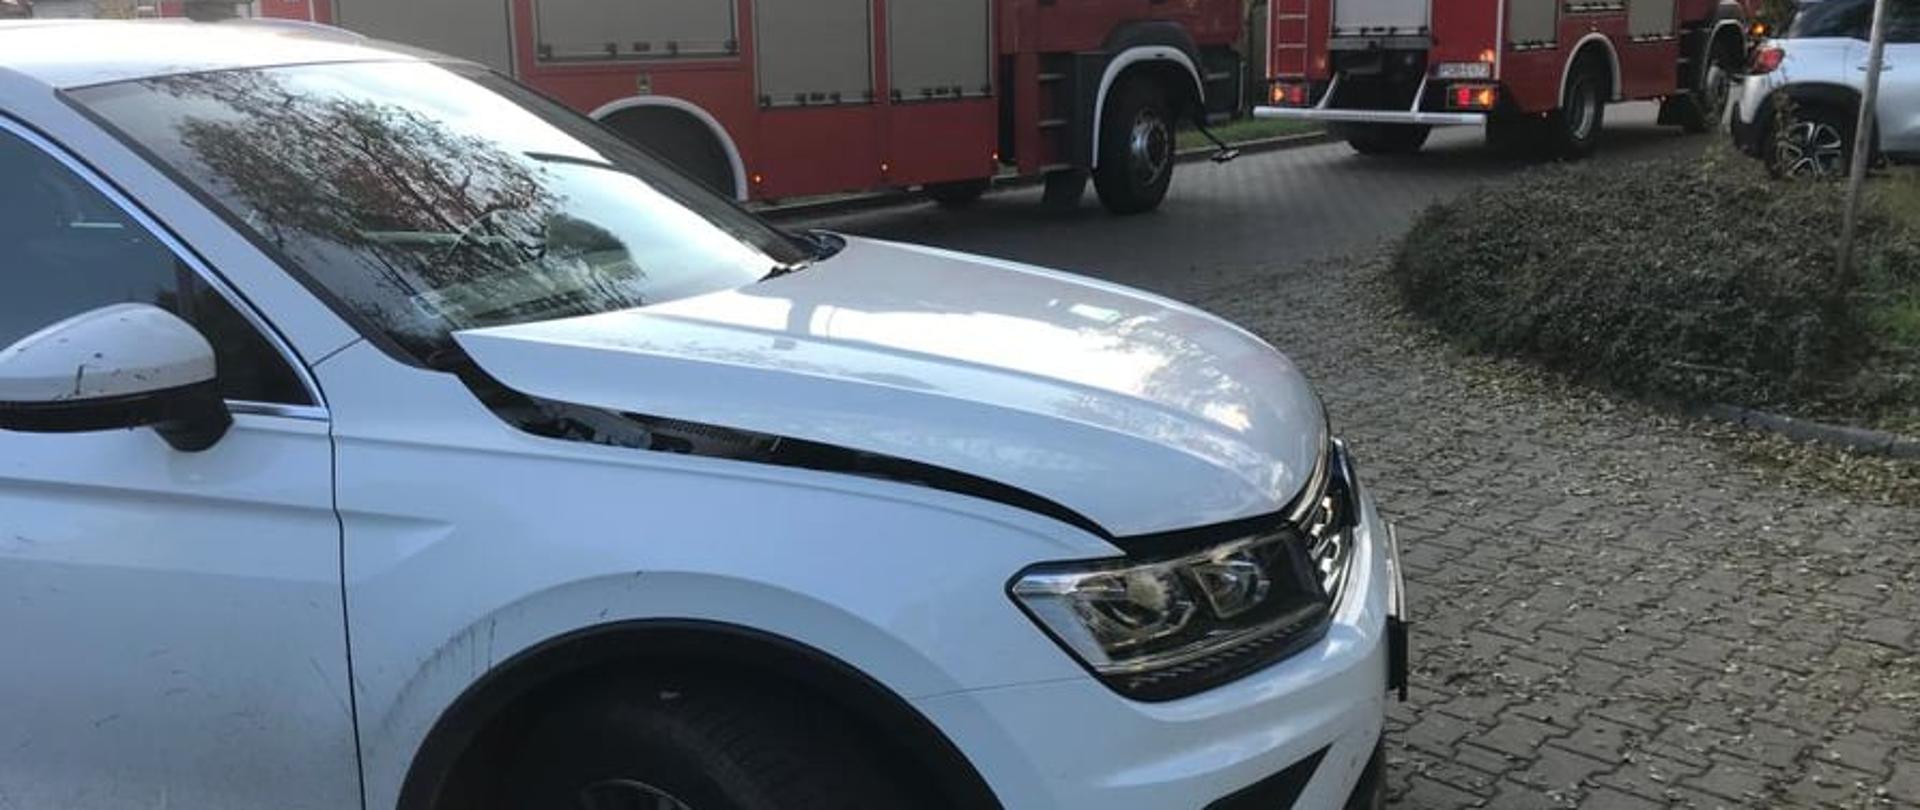 Zdjęcie przedstawia uszkodzony samochód marki VW Tiguan